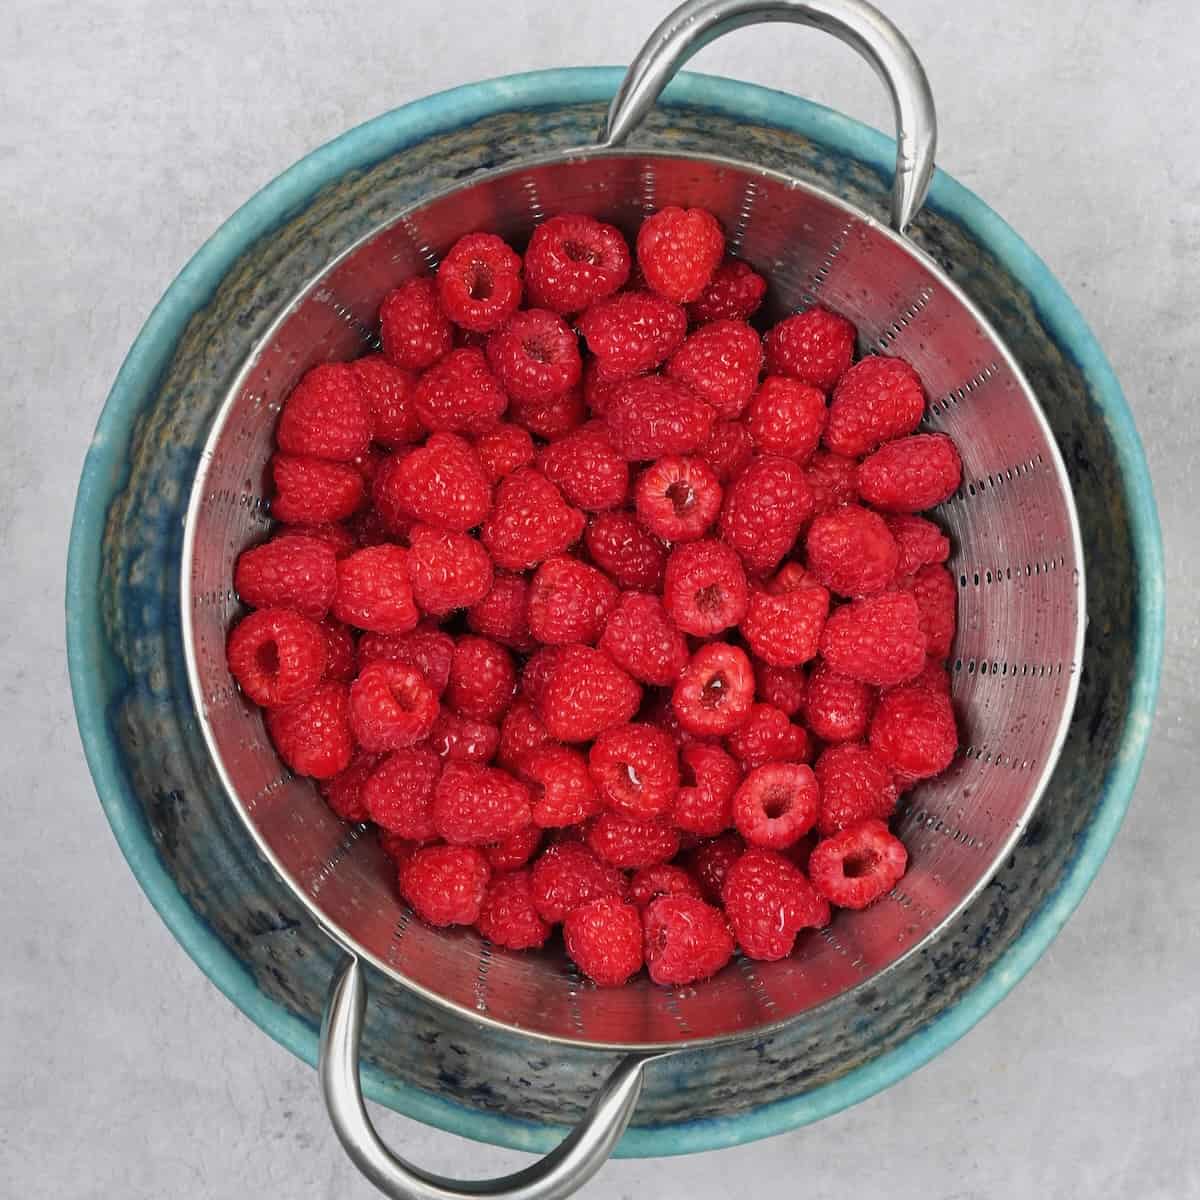 Rinsed raspberries in a bowl